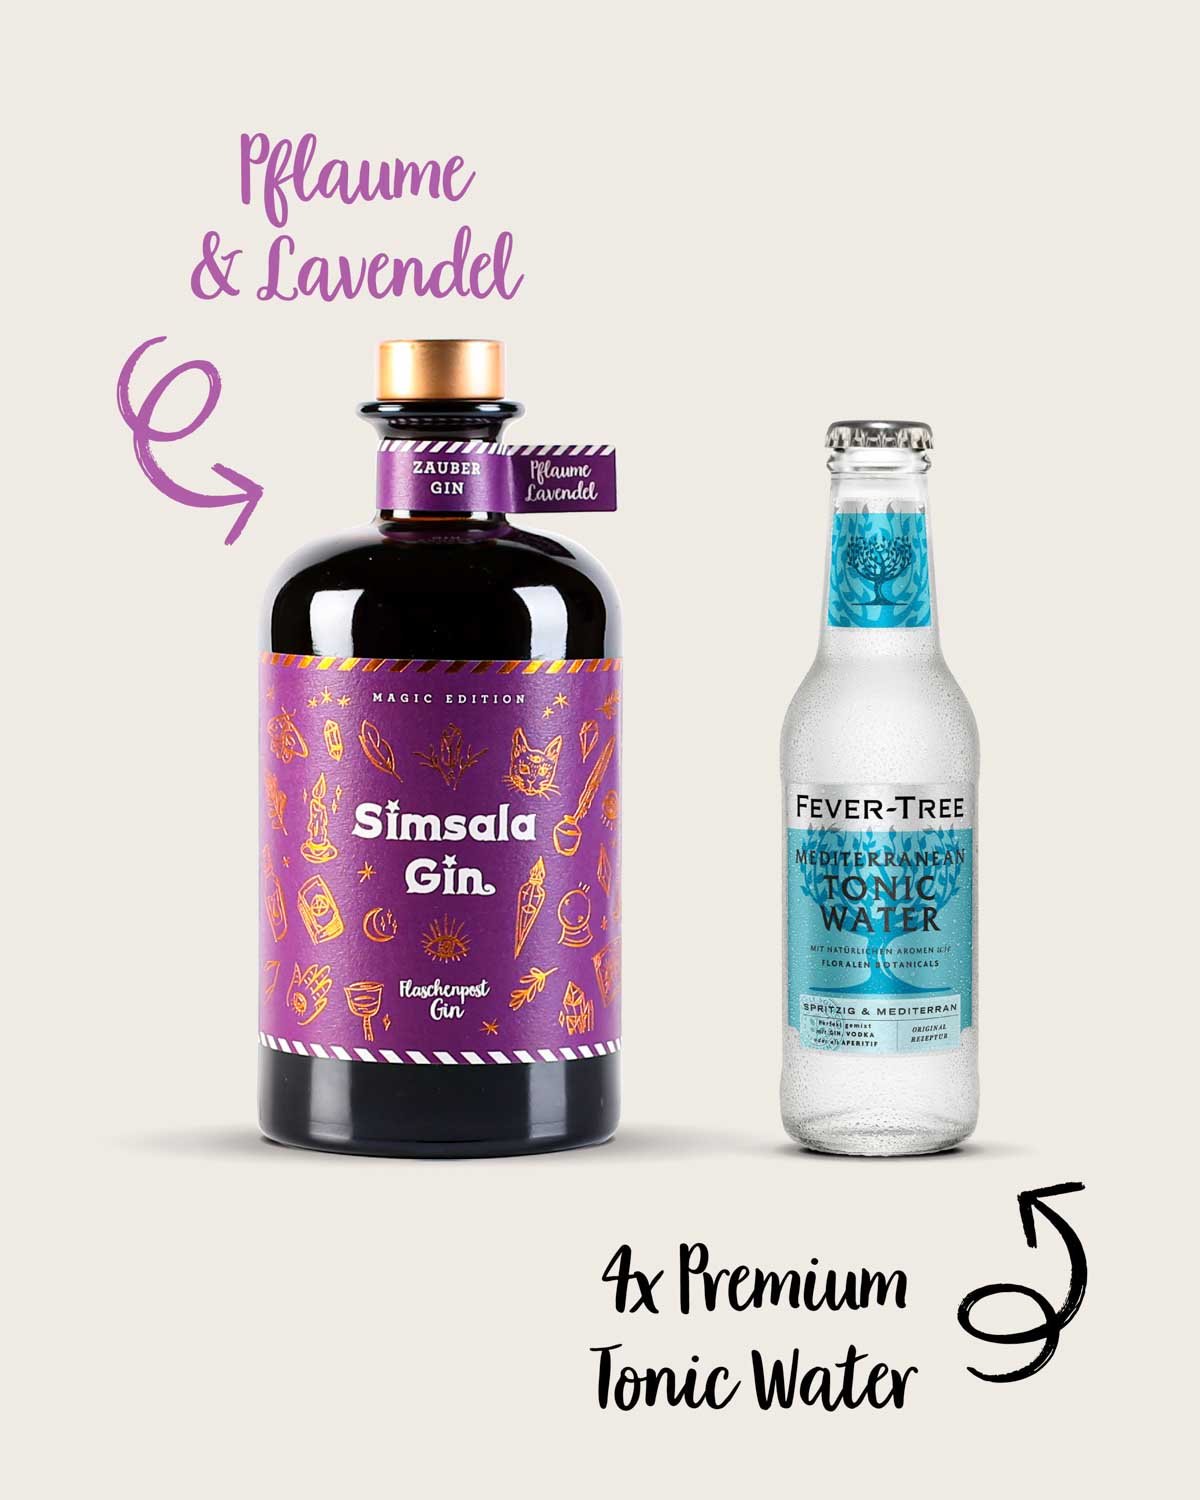 Unser Gin und Tonic Paket enthält vier Flaschen Premium Fever-Tree Tonic und eine Flasche des Simsala Gins von Flaschenpost Gin. Sobald du das Tonic hinzugibst, verwandelt sich der Gin von blau zu lila, eine faszinierender Farbwechsel. Die verwendeten Botanicals sind Pflaume und Lavendel, die zusammen eine harmonische Geschmackskombination erzeugen. 